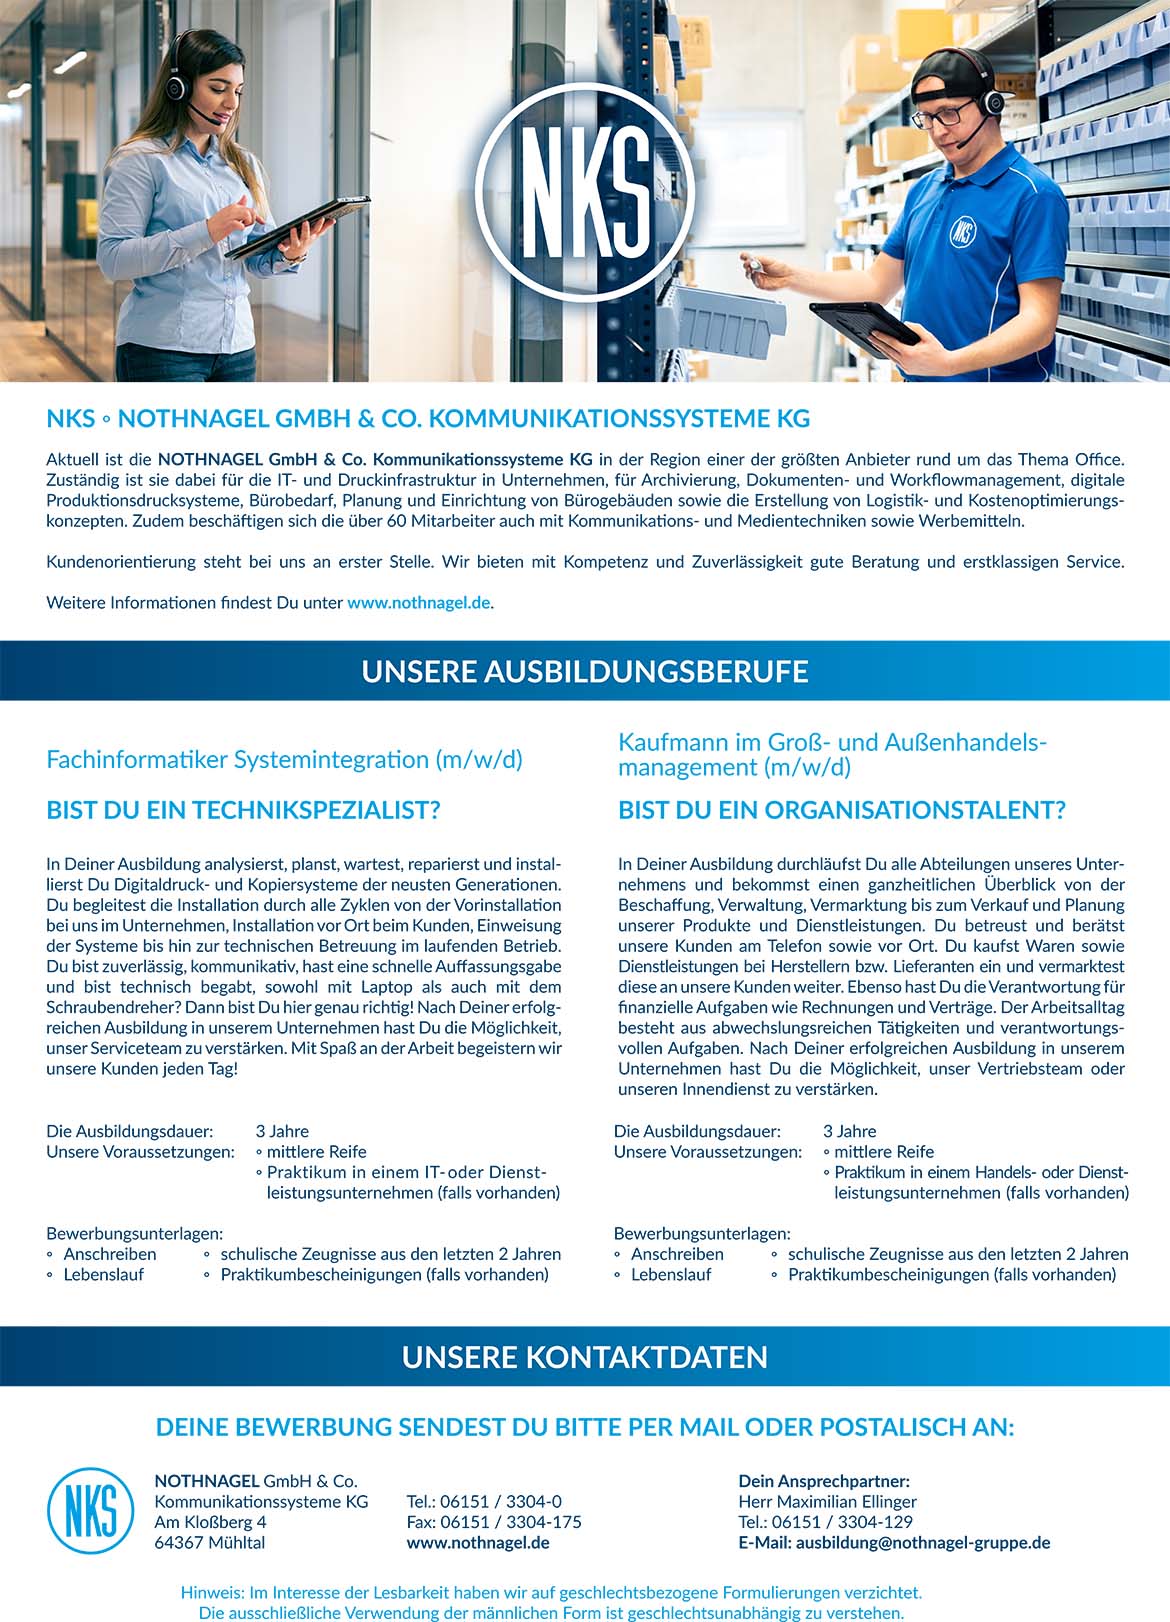 Ausbildungsplakat: NOTHNAGEL GmbH & Co. Kommunikationssysteme KG